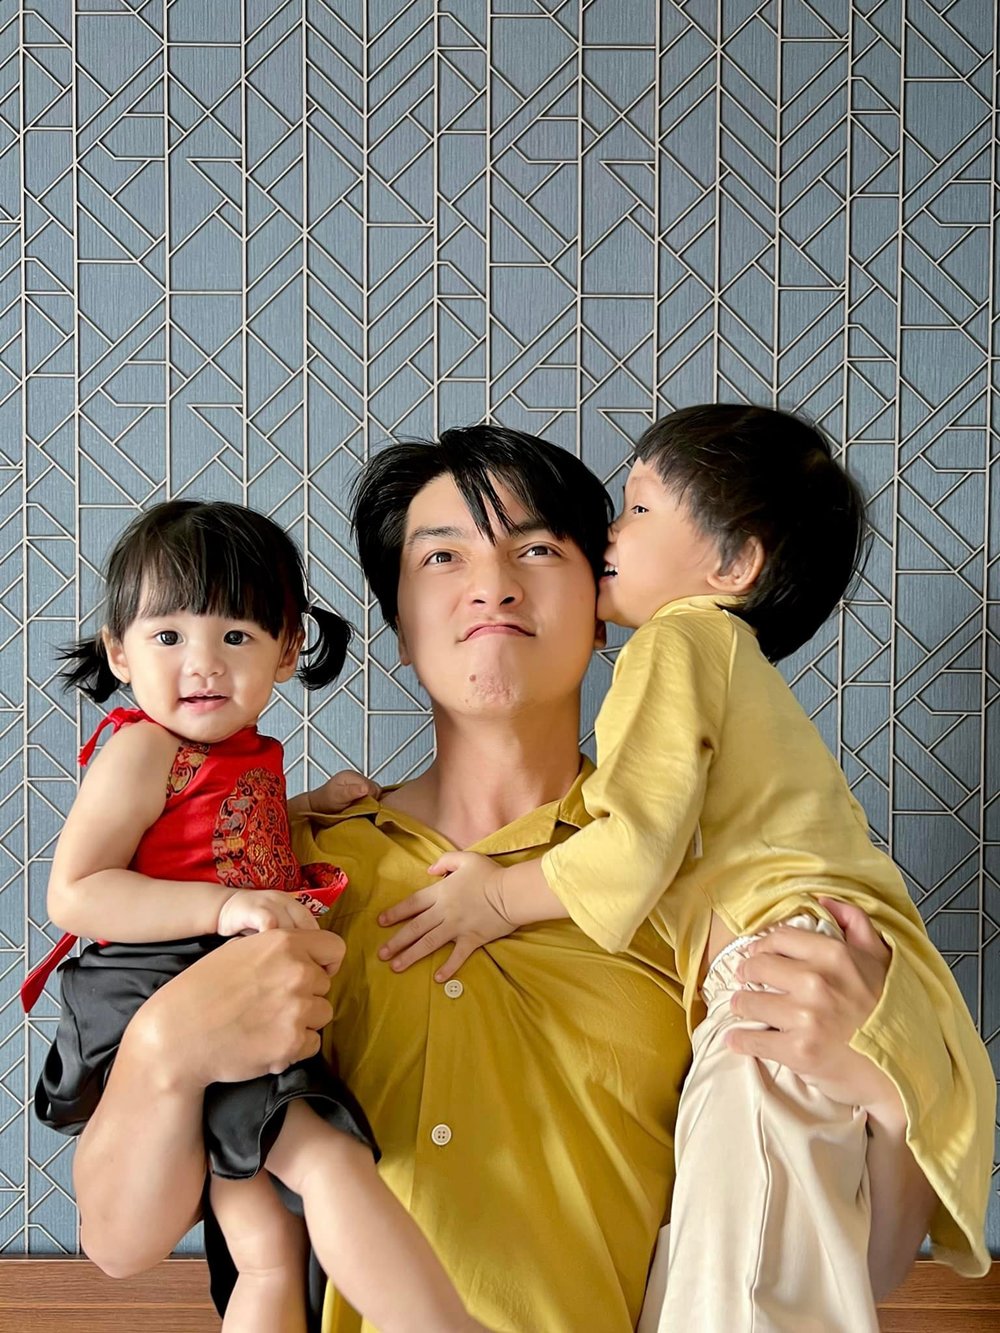  
Cuộc sống gia đình của Ngọc Trai khiến nhiều người ngưỡng mộ. (Ảnh: Facebook Võ Ngọc Trai)